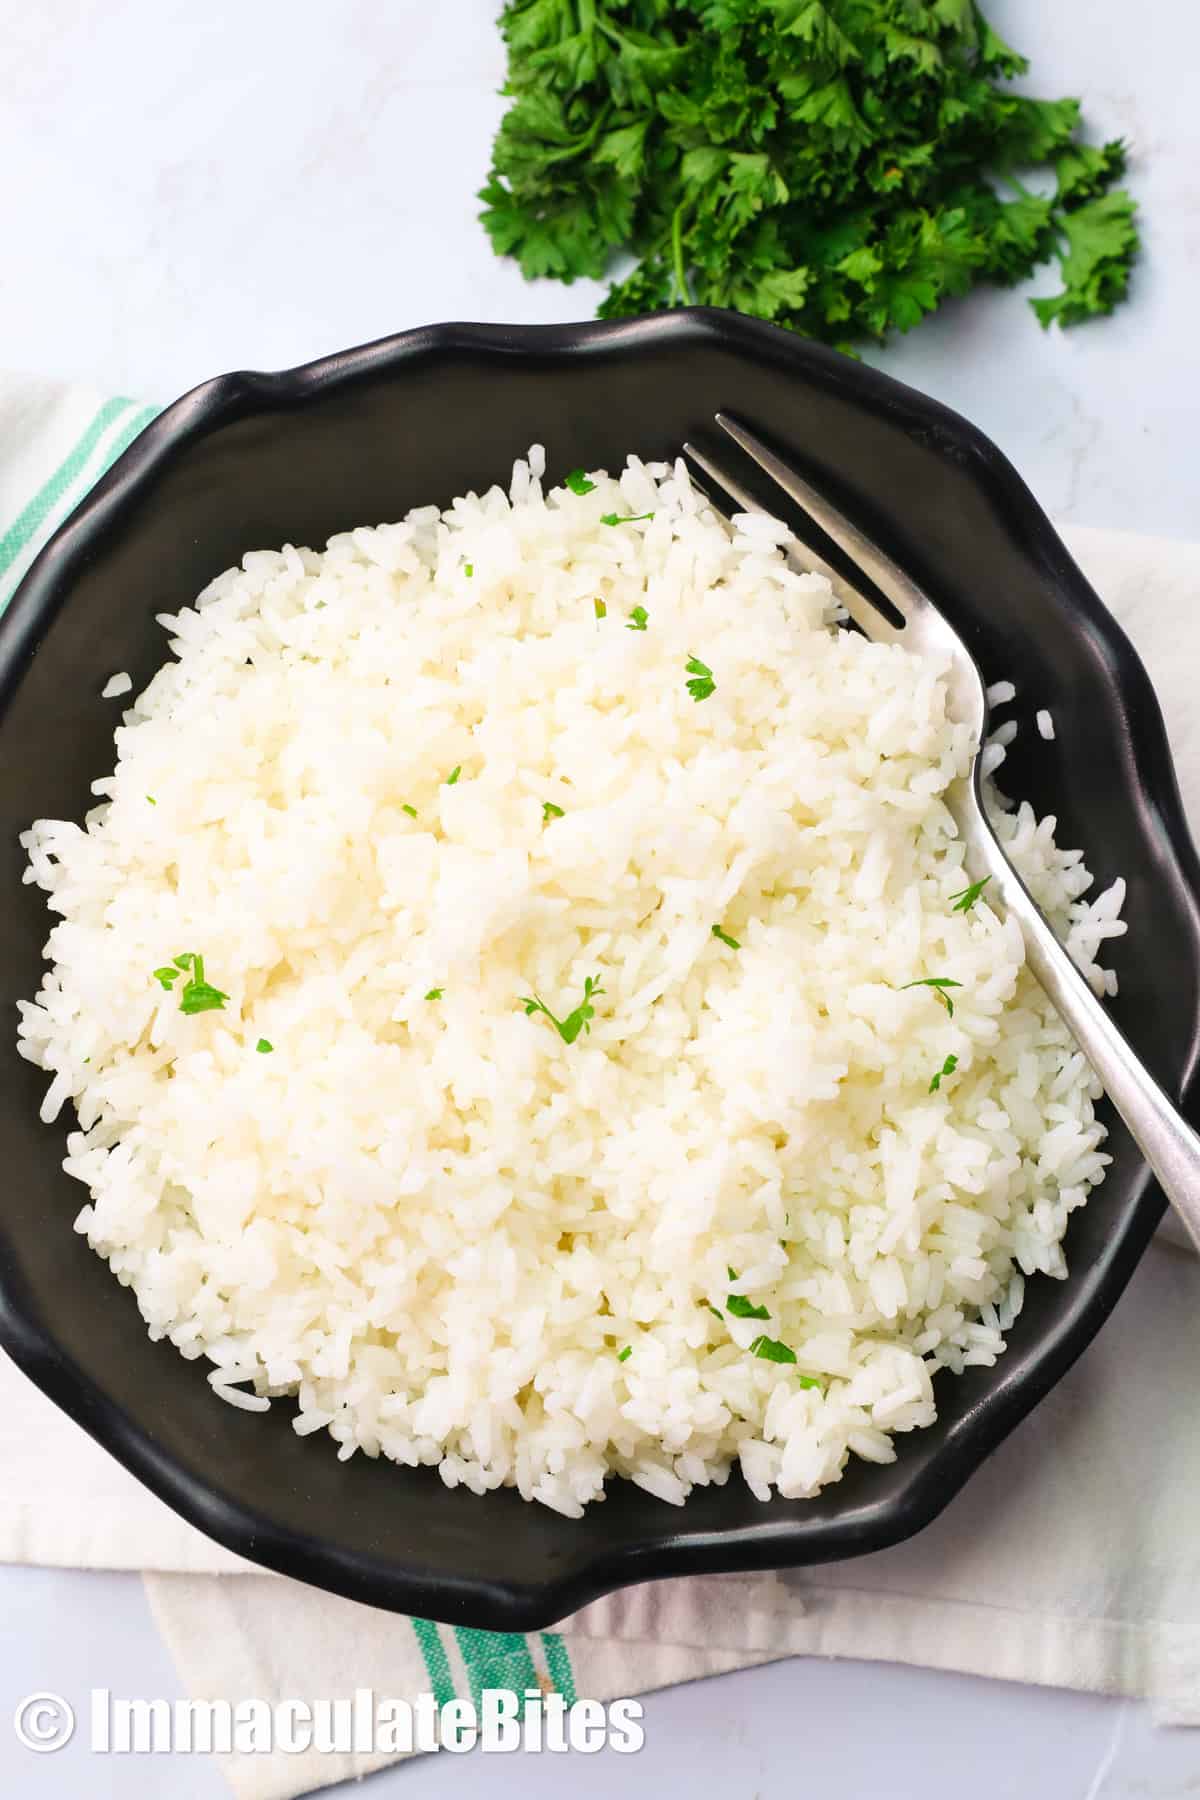 Le riz au jasmin fait partie des meilleurs aliments réconfortants